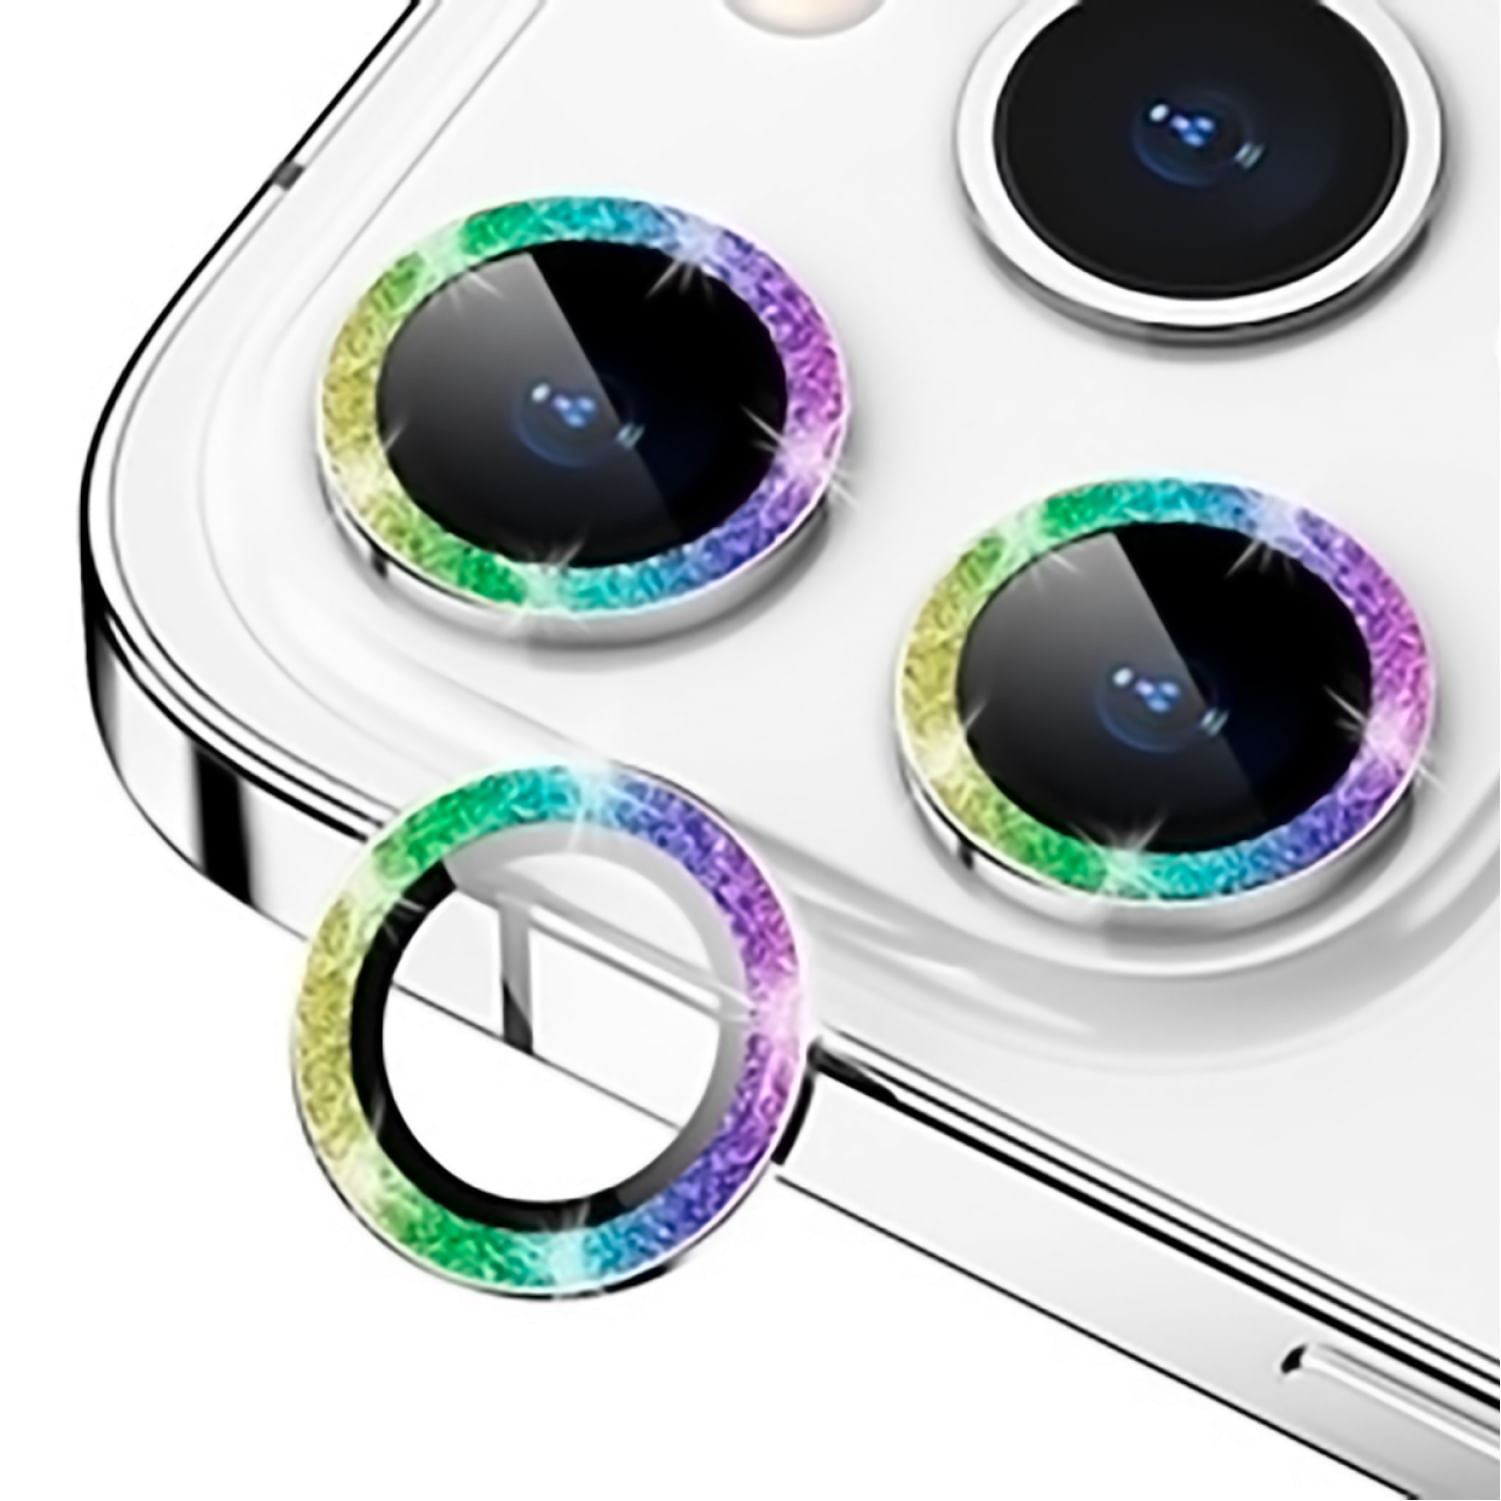 Mica De Cámara Glitter Iphone 12 Pro Max Tornasol